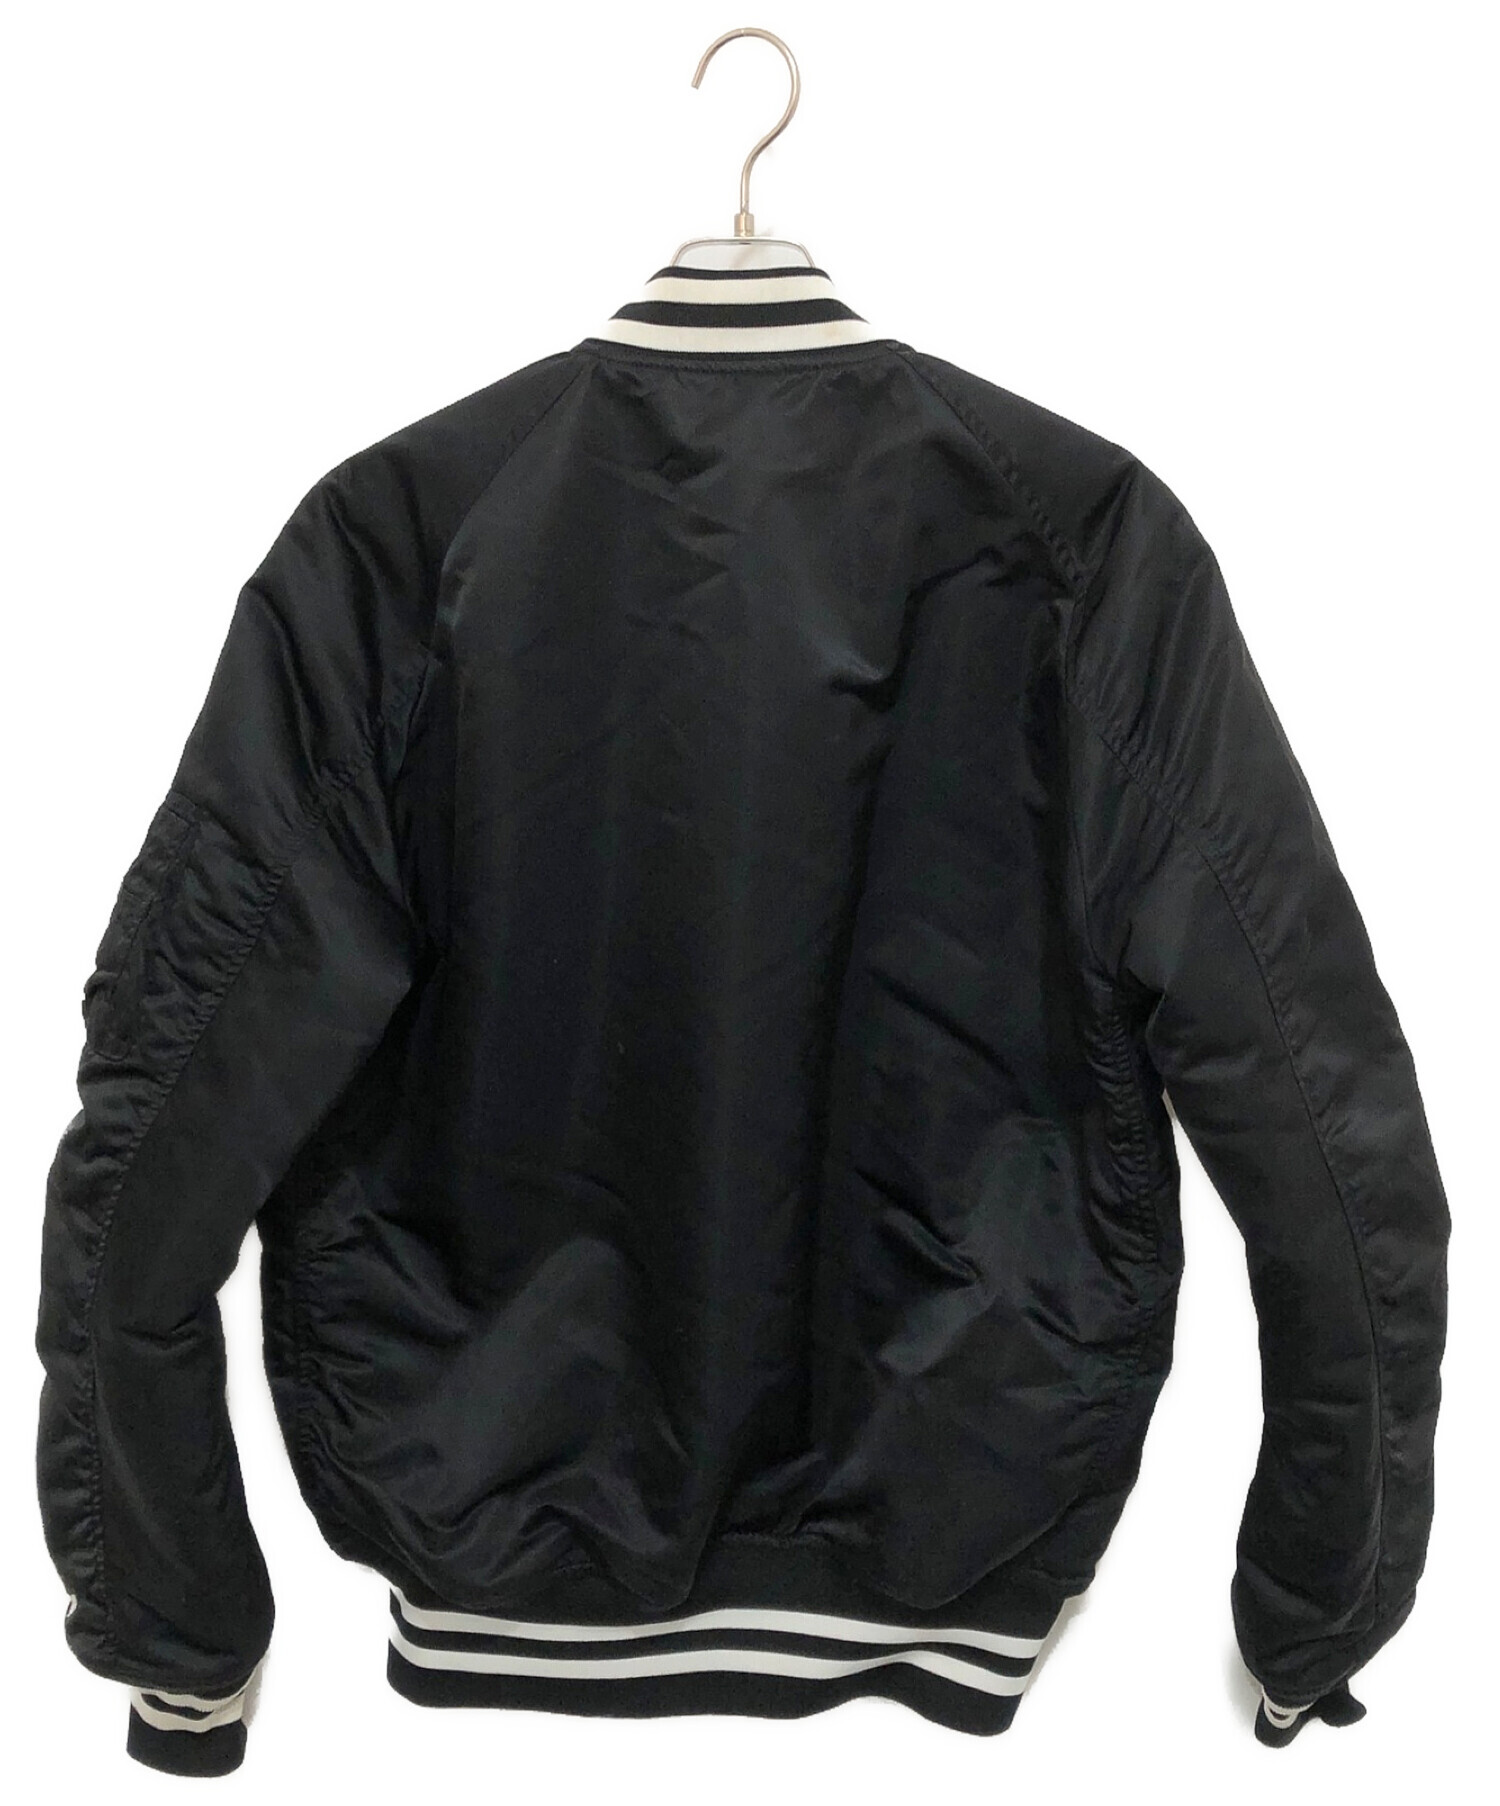 SEQUEL (シークエル) MA-1ジャケット ブラック サイズ:M